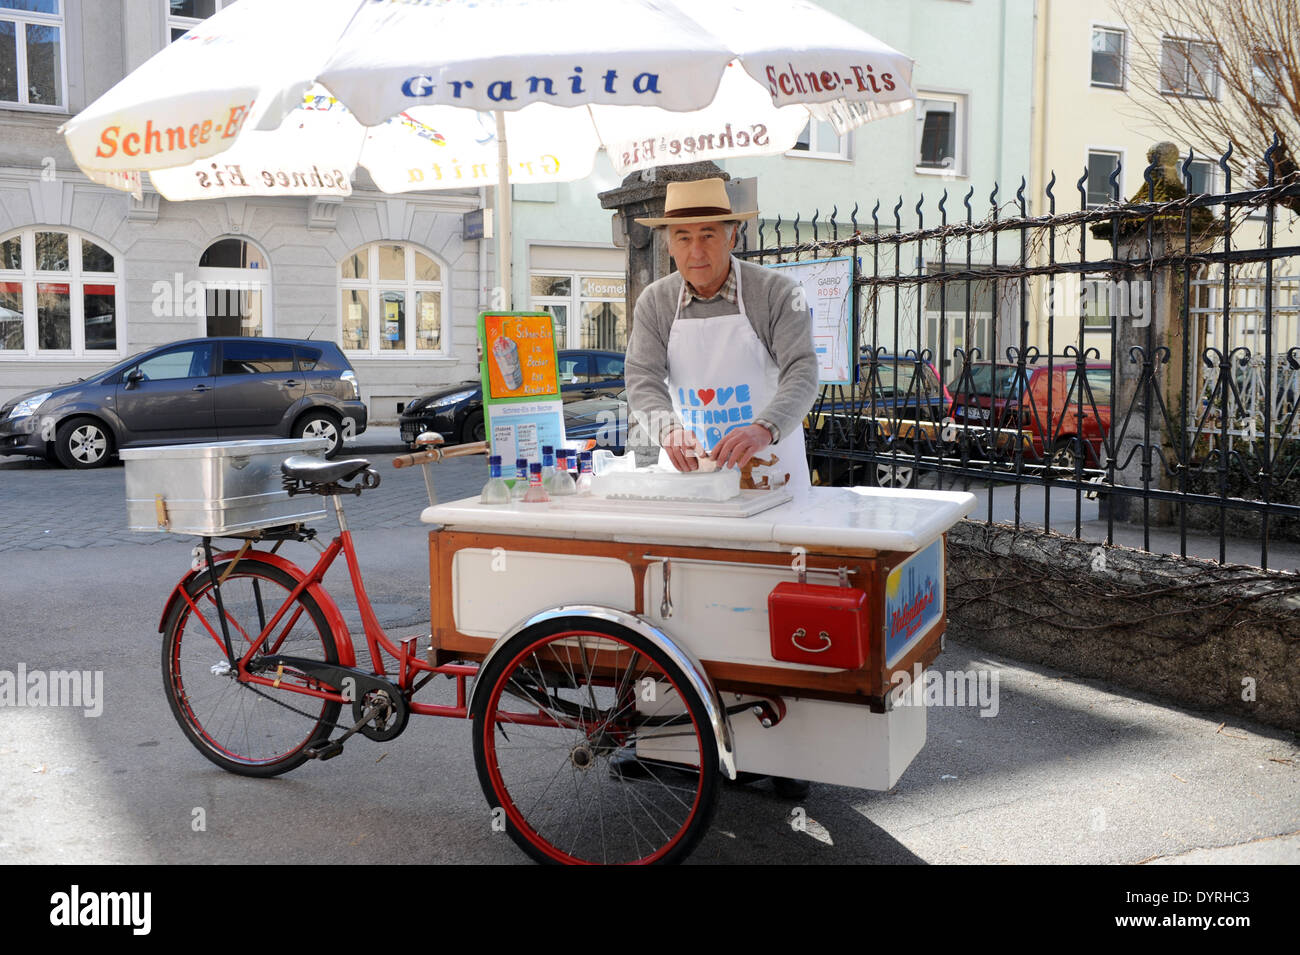 Ein mobiler Eisverkäufer in München, 2011 Stockfotografie - Alamy